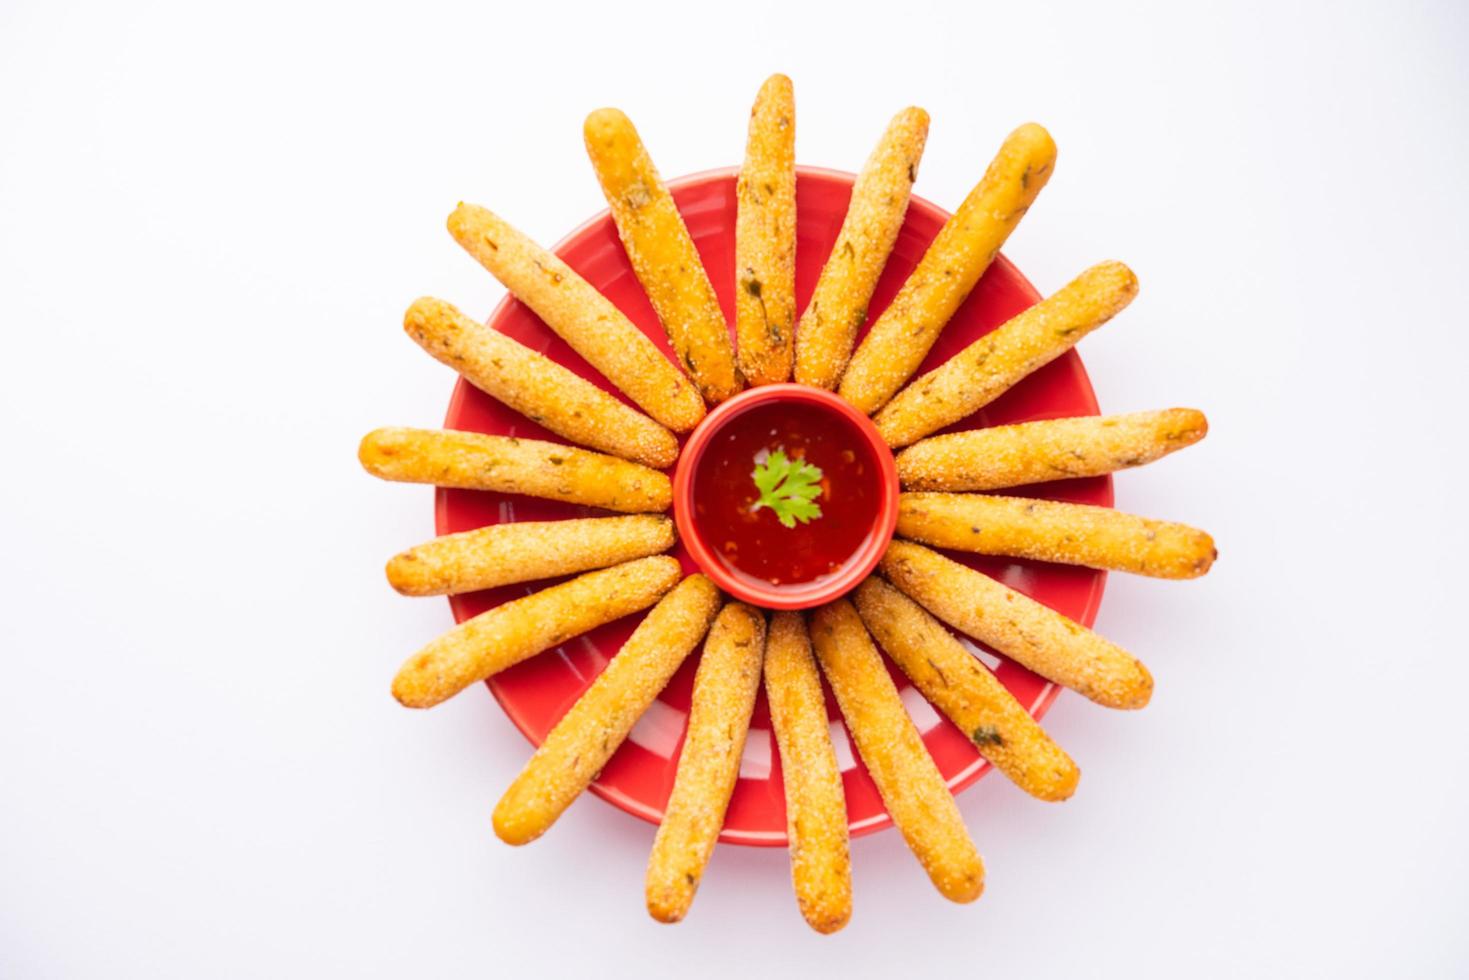 dedos crocantes de rava aloo ou sêmola de batata palitos fritos servidos com ketchup foto